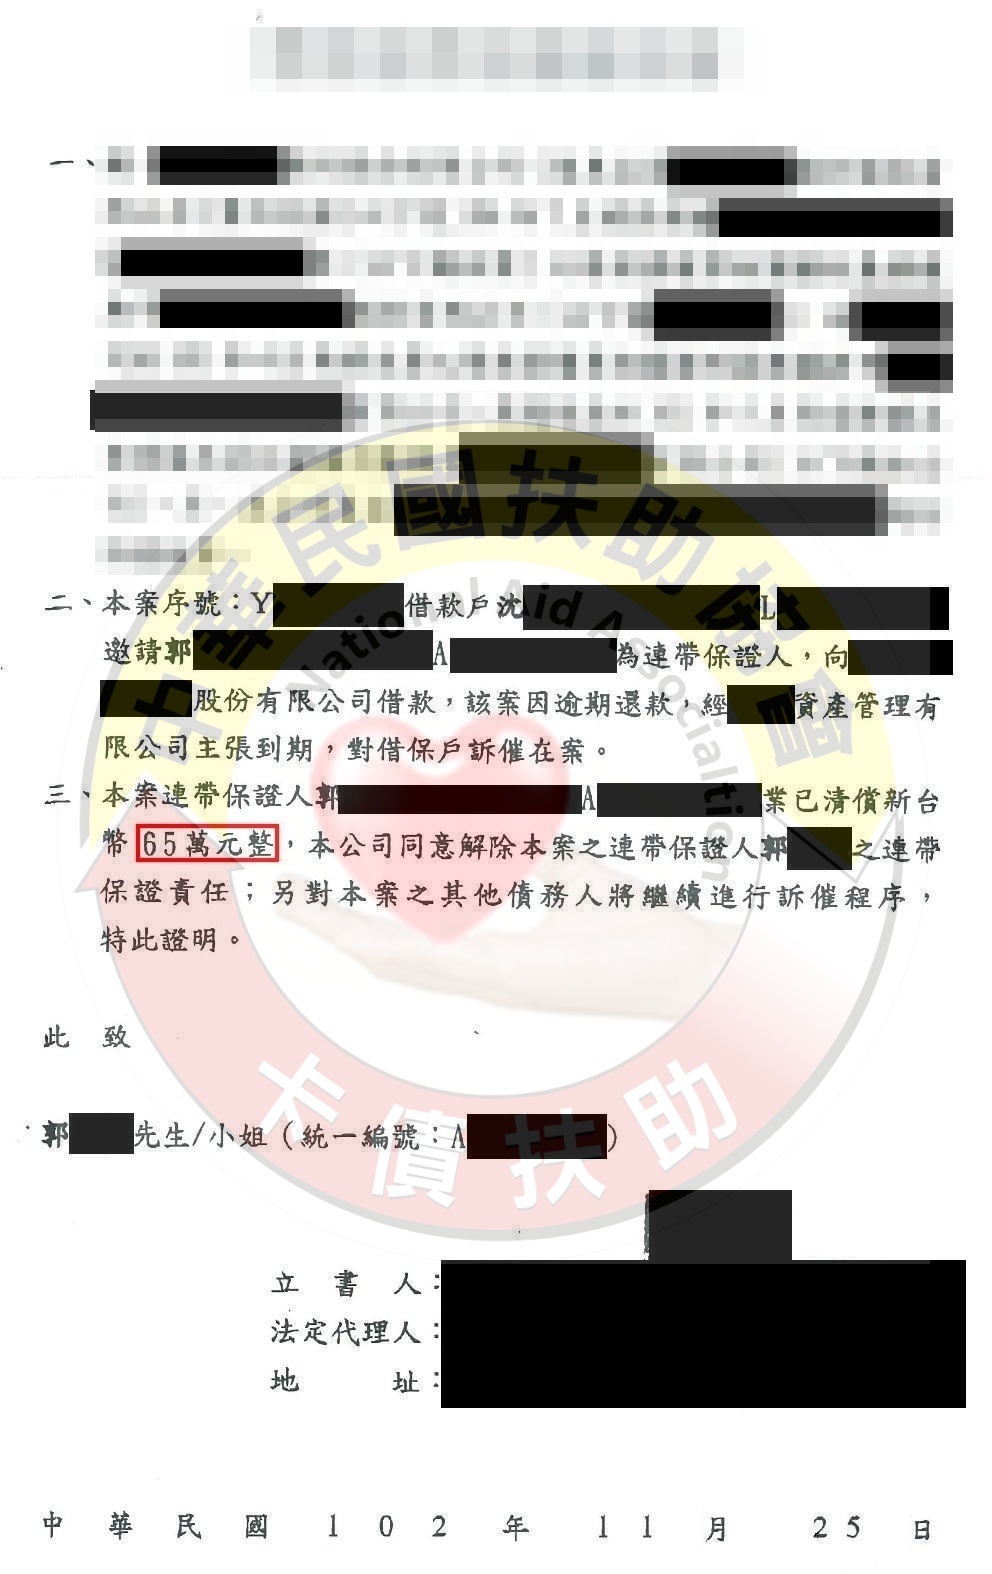 台北郭先生-1,800,000元協議2.8折免除保人責任